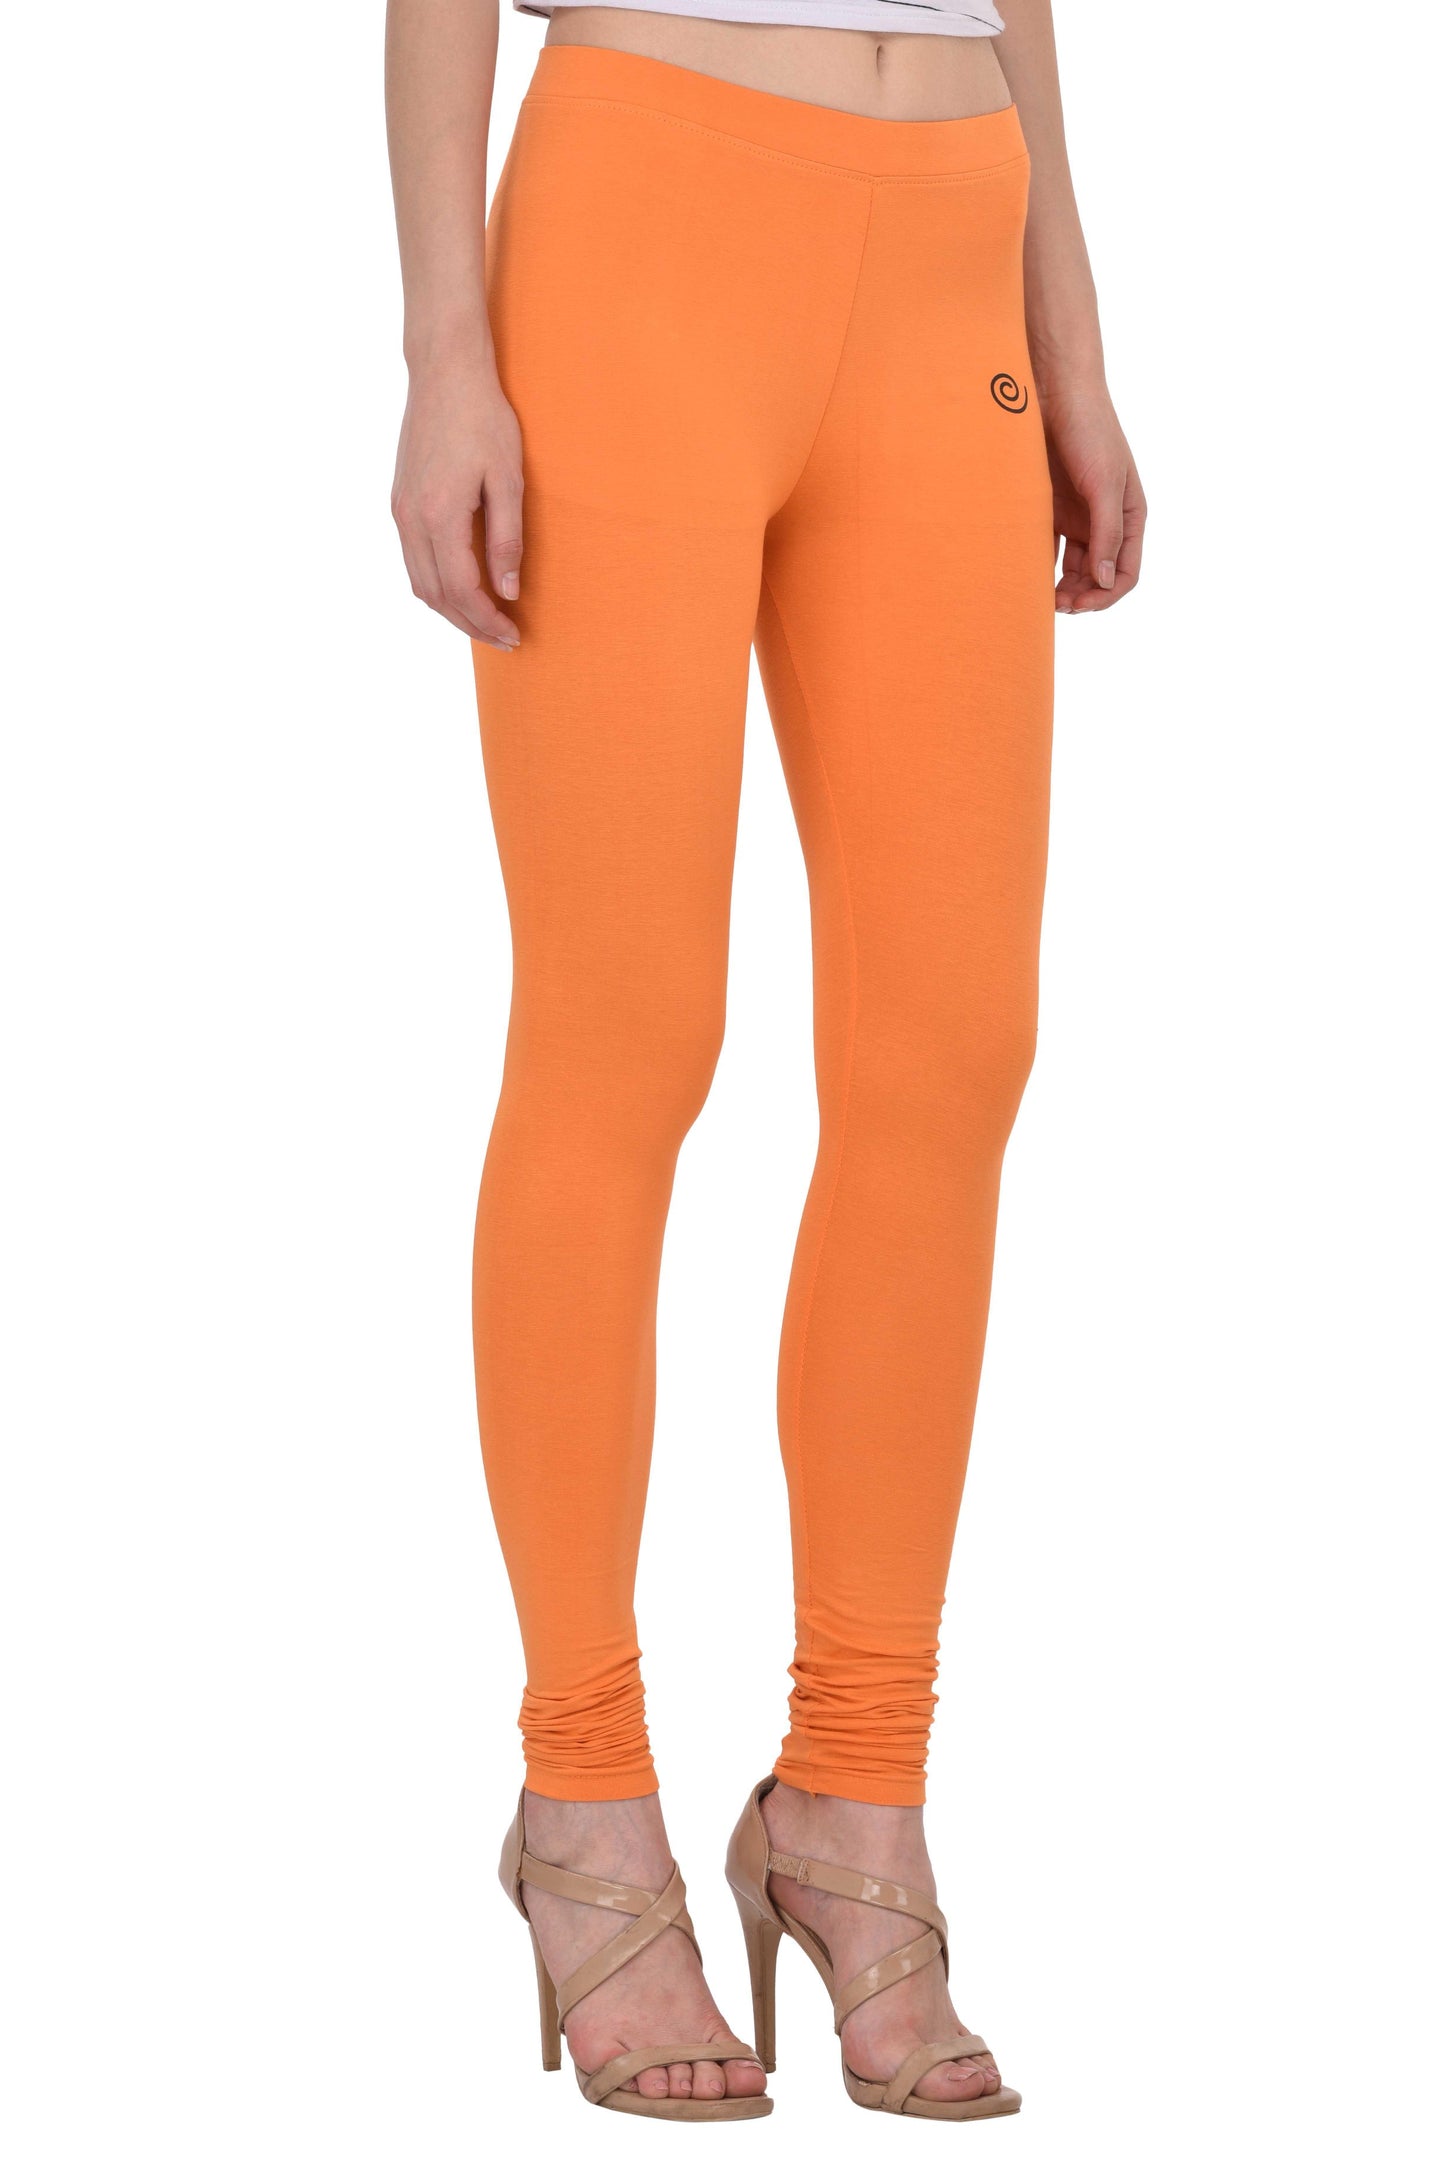 Diti Mandarin Orange Cotton Leggings for Women Diti